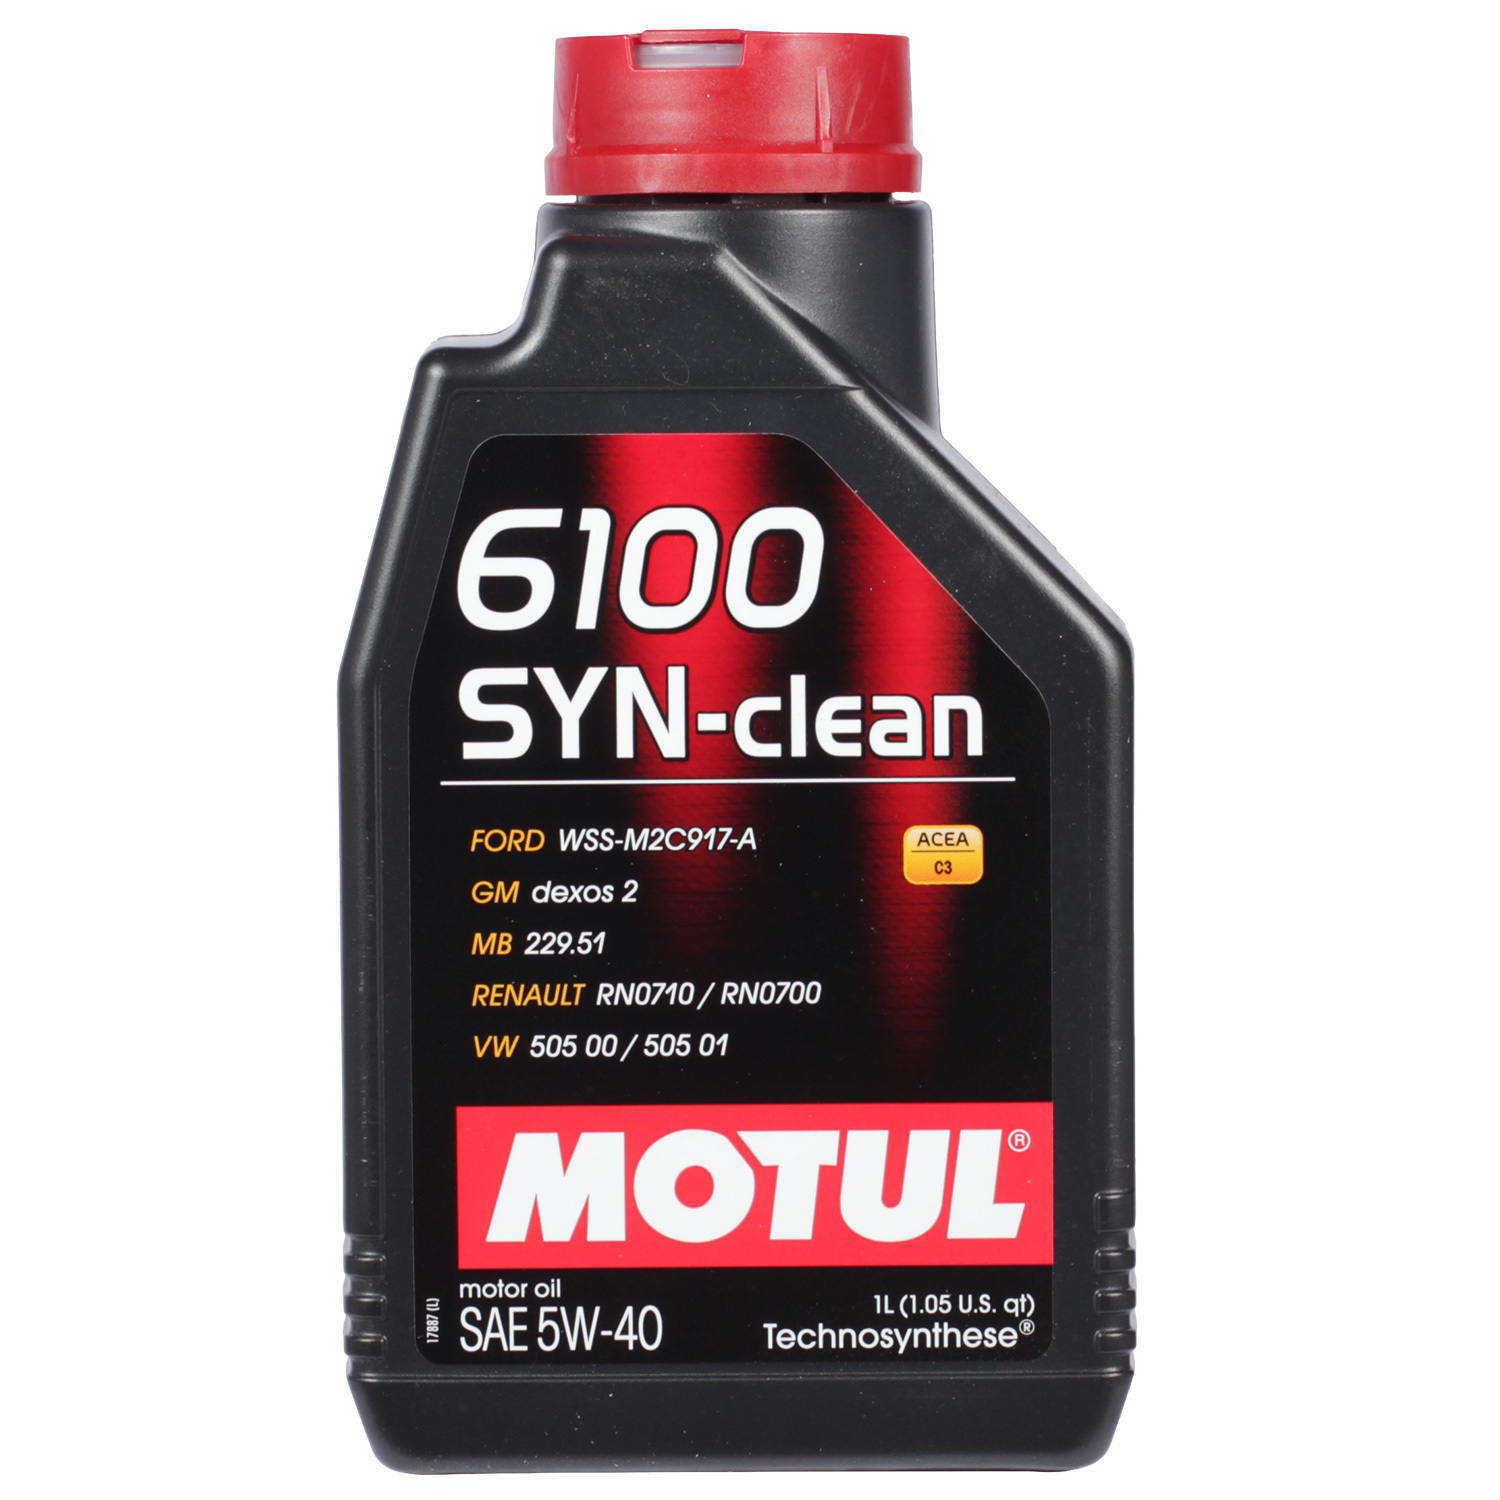 Motul Моторное масло Motul 6100 SYN-CLEAN 5W-40, 1 л motul моторное масло motul 8100 x clean efe 5w 30 1 л